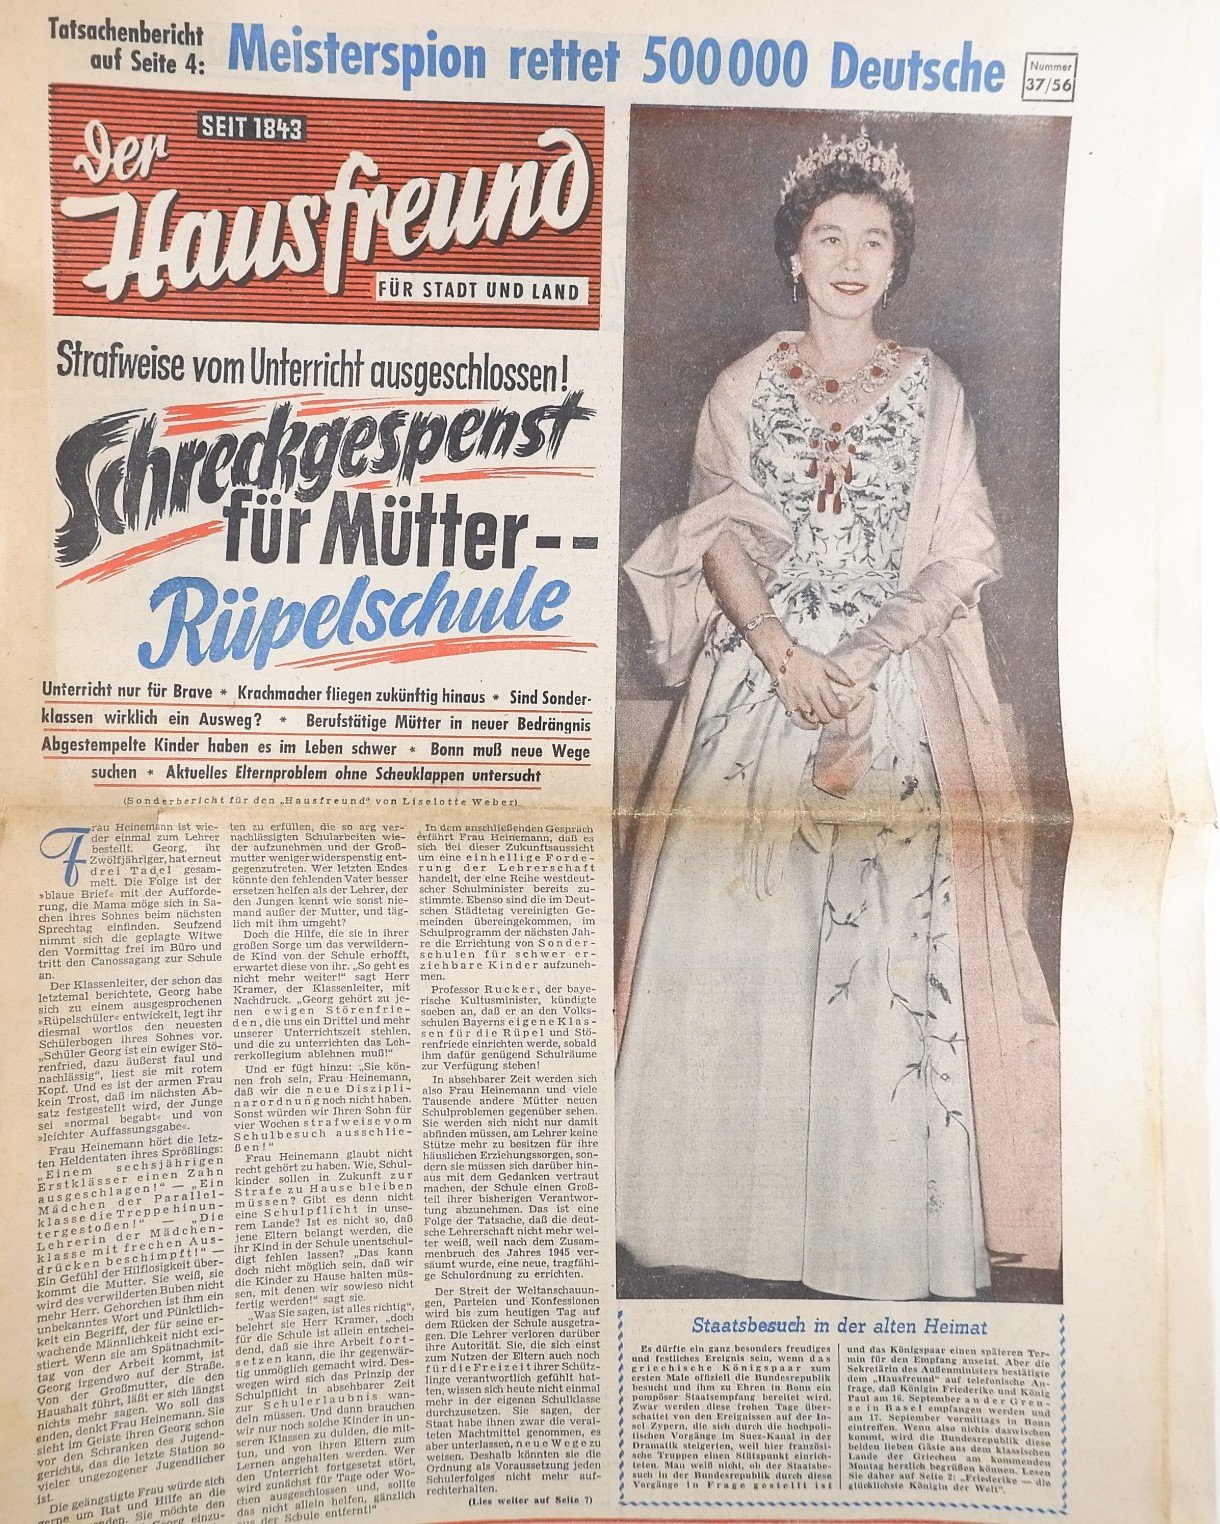 Der Hausfreund, Ausgabe 37 1956 (Volkskunde- und Freilichtmuseum Roscheider Hof RR-F)